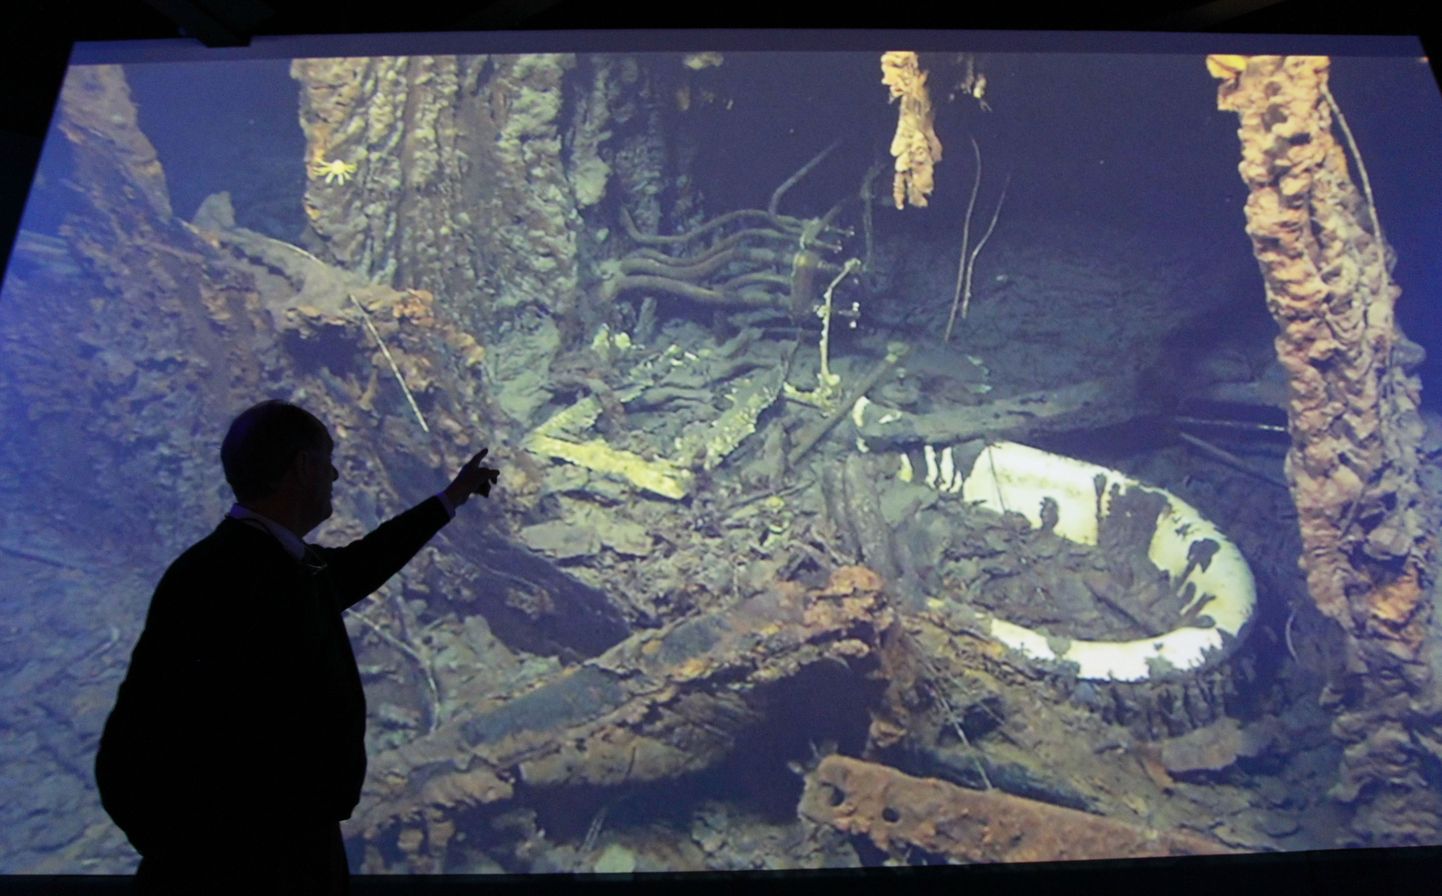 Robert Ballard näitamas 2012. aastal Põhja-Iirimaal Belfastis peetud loengus fotot, mille allveerobot tegi 1985. aastal Titanicu vrakist. Pildil on näha Titanicu kapteni Edward Smithi kajutit ja vanni